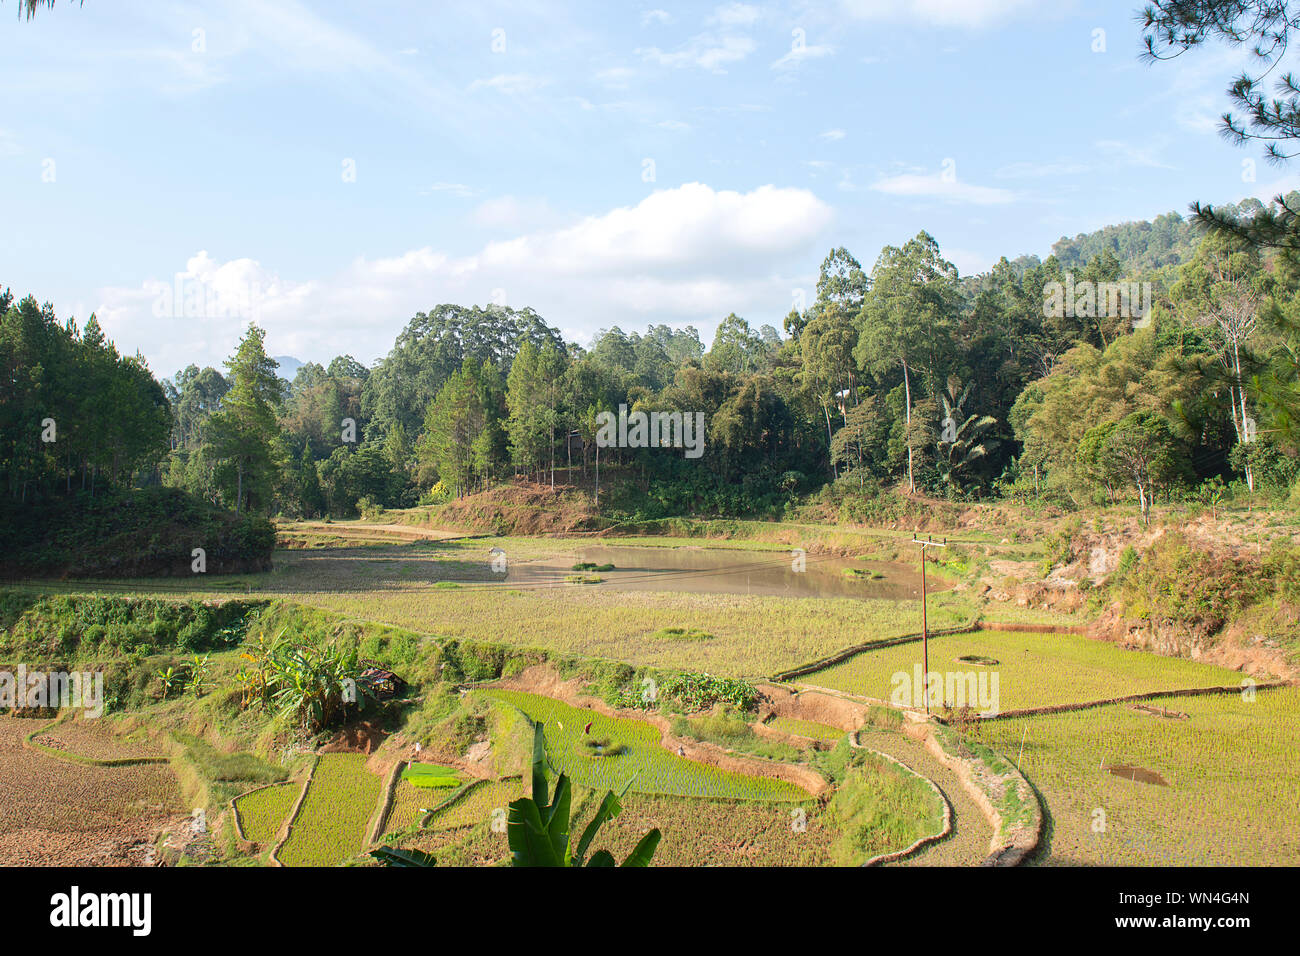 Le riz brun et vert dans les rizières en terrasse, Tana Toraja de Sulawesi du Sud, en Indonésie Banque D'Images